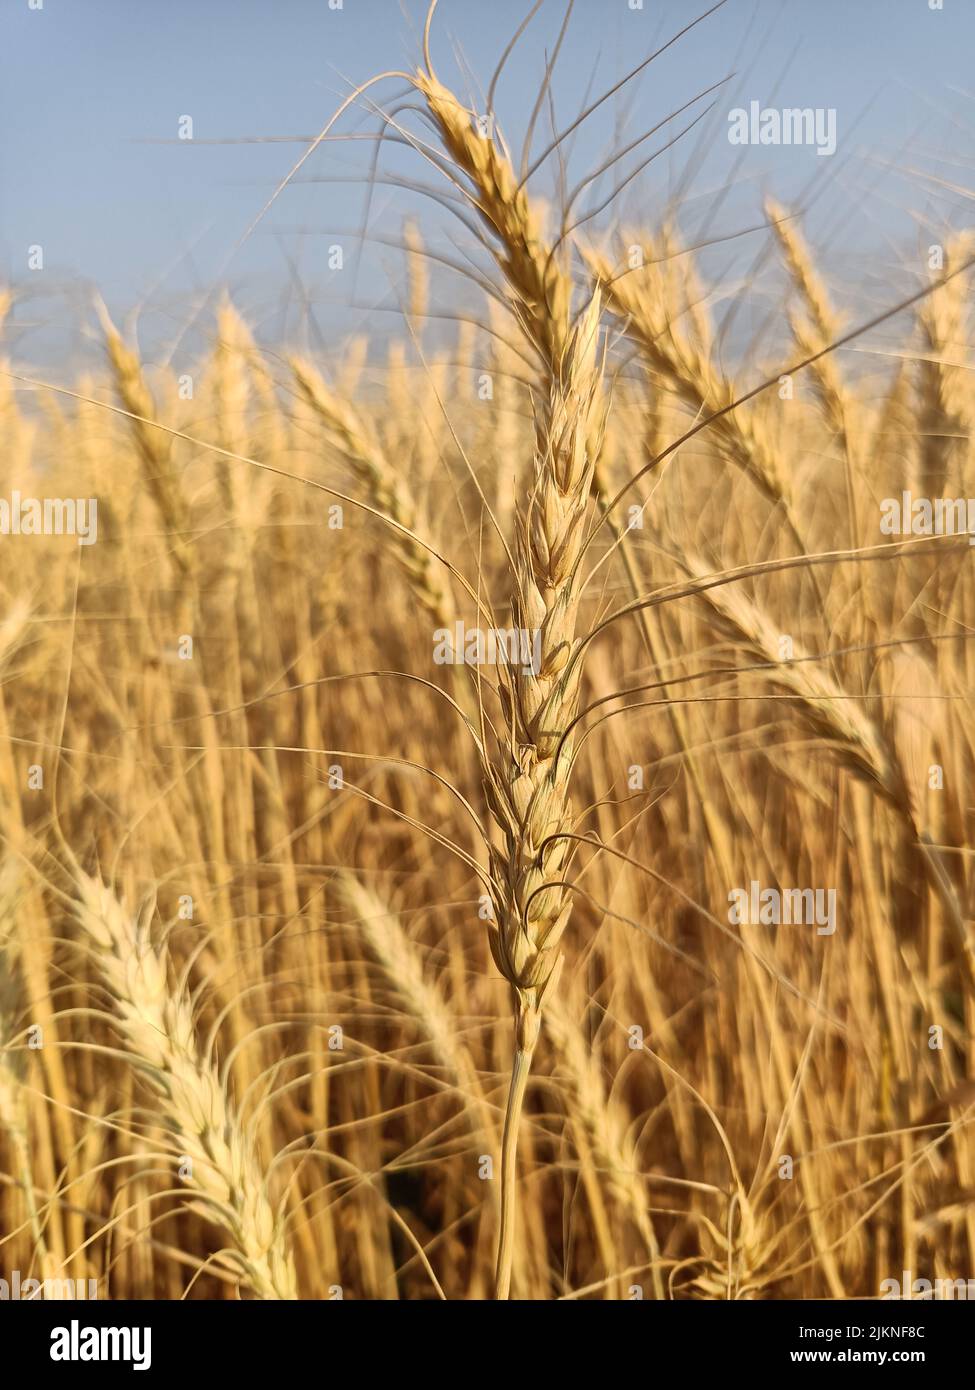 Weizenfelder in Farm in indien gelb goldenen Weizen Ernte Bauernhof. Trockenes Weizenfeld bei Sonnenlicht, Ähren, Goldweizenfelder Erntezeit Stockfoto